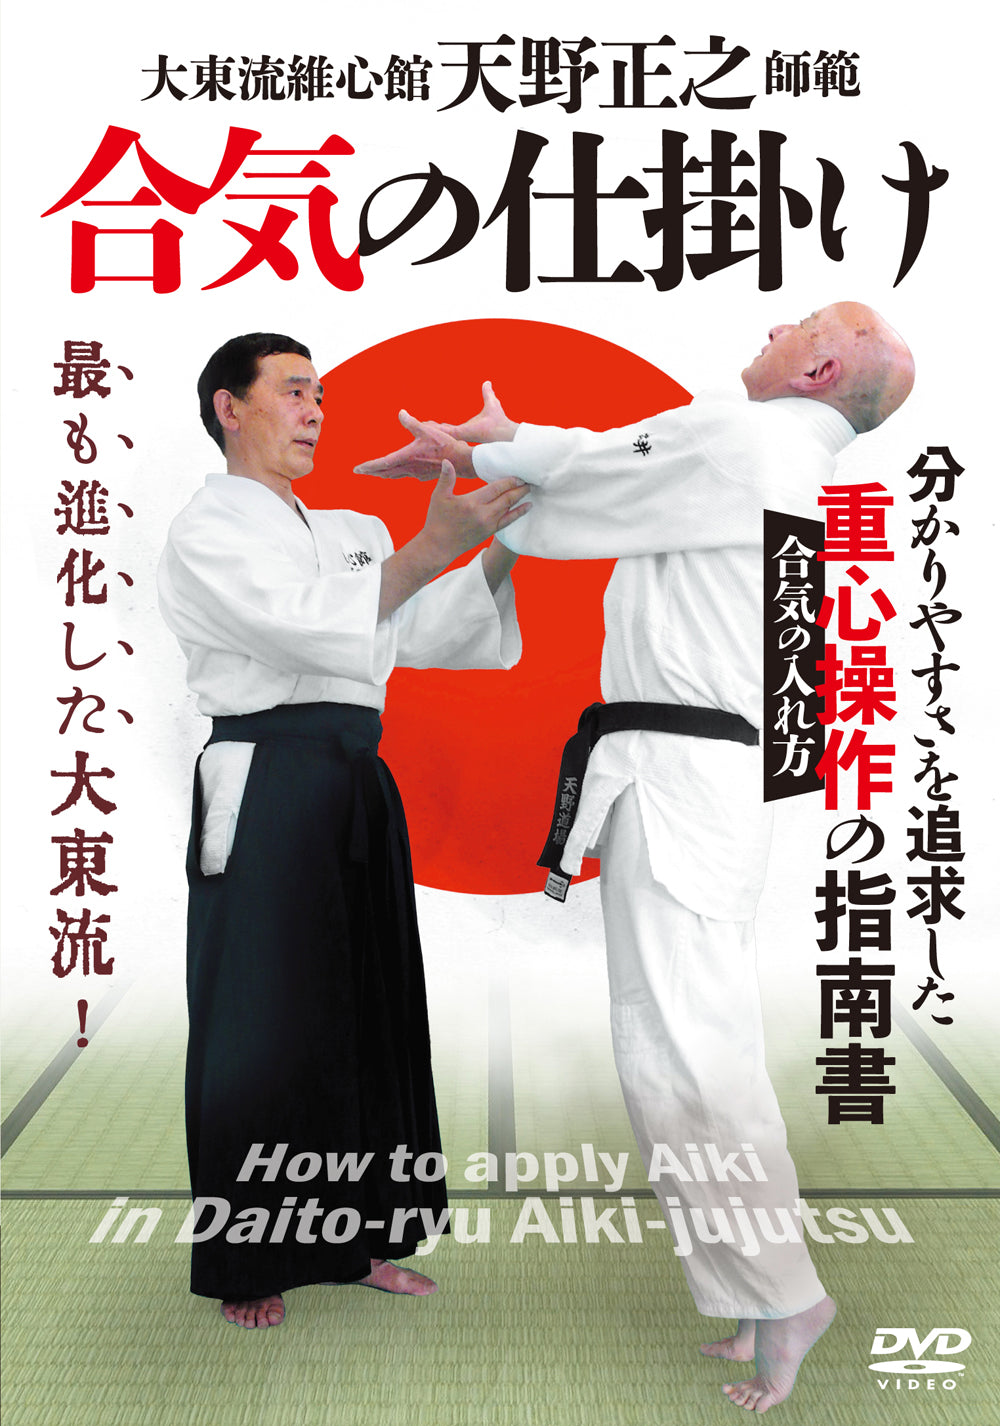 Cómo aplicar Aiki en el DVD Daito Ryu Aikijujutsu de Masayuki Amano